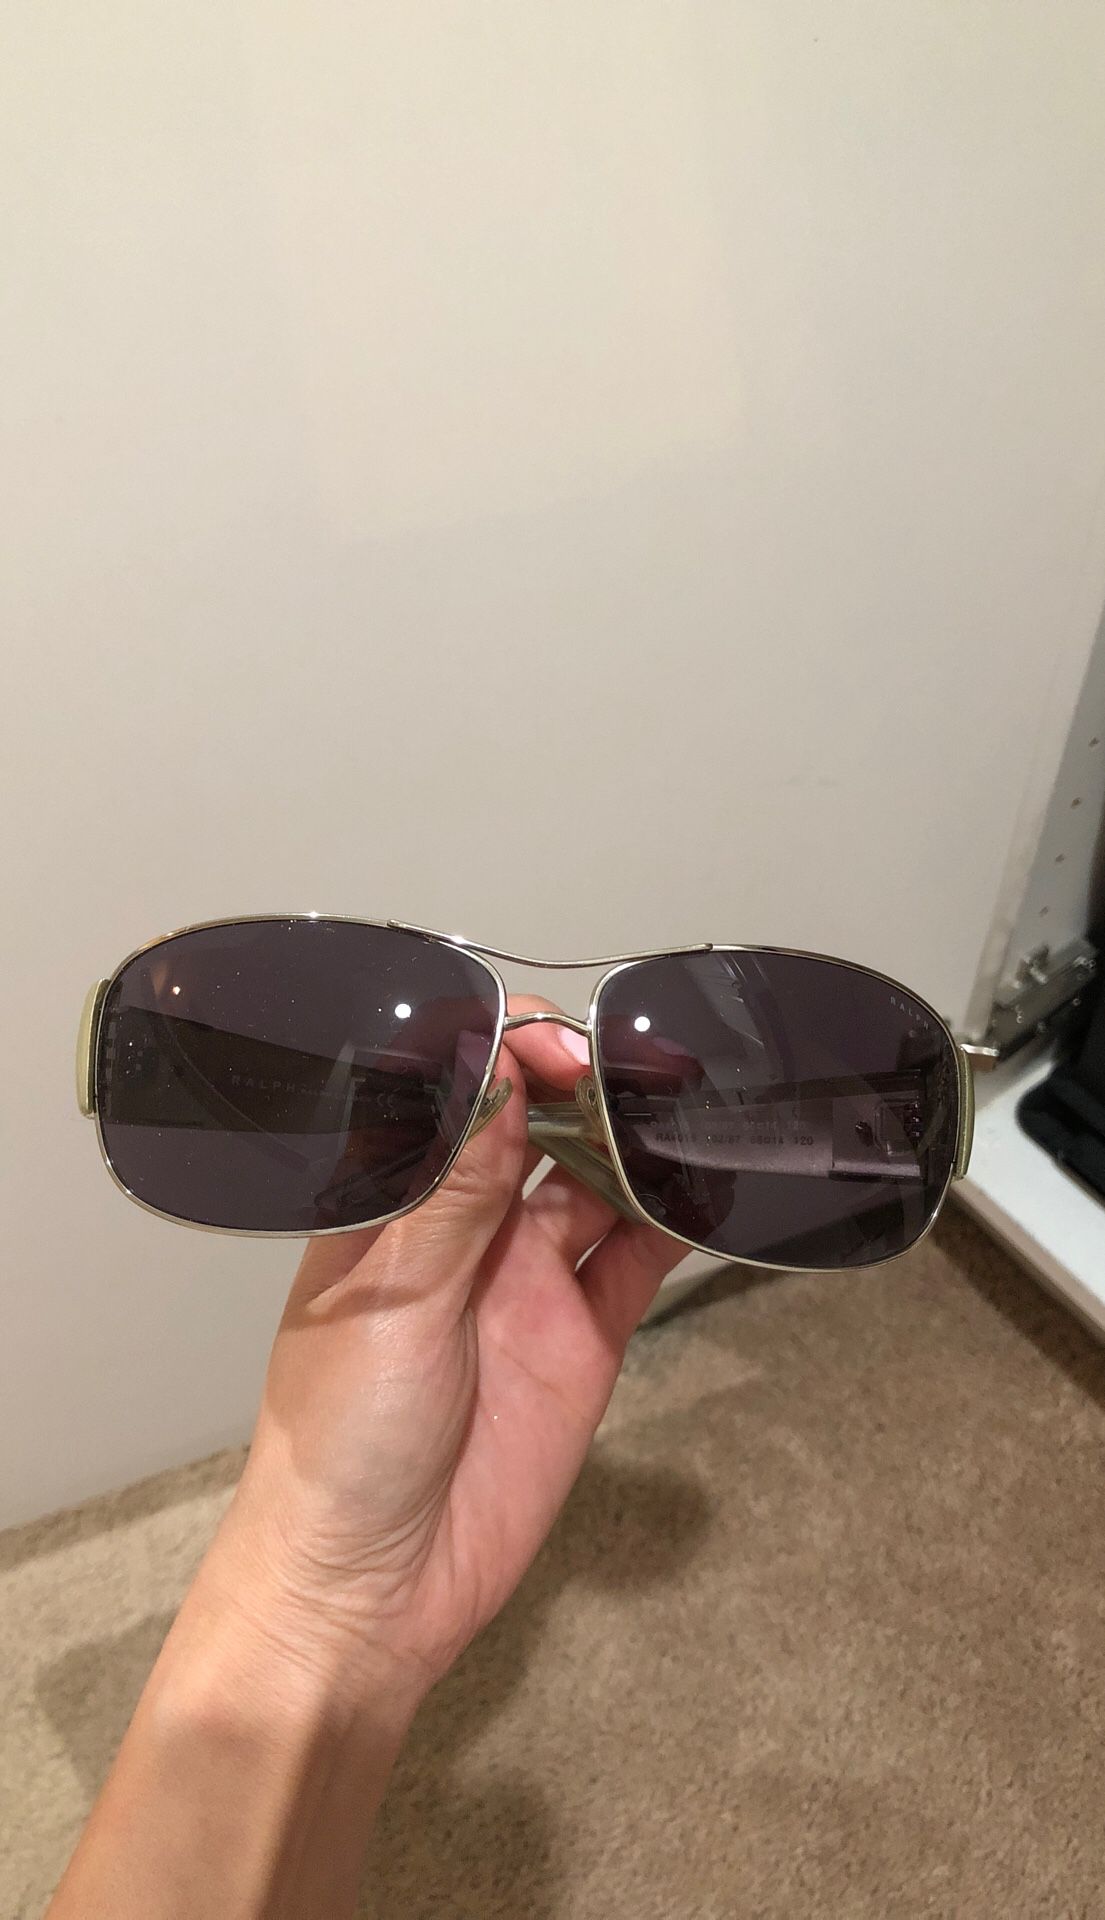 Authentic Ralph Lauren sunglasses